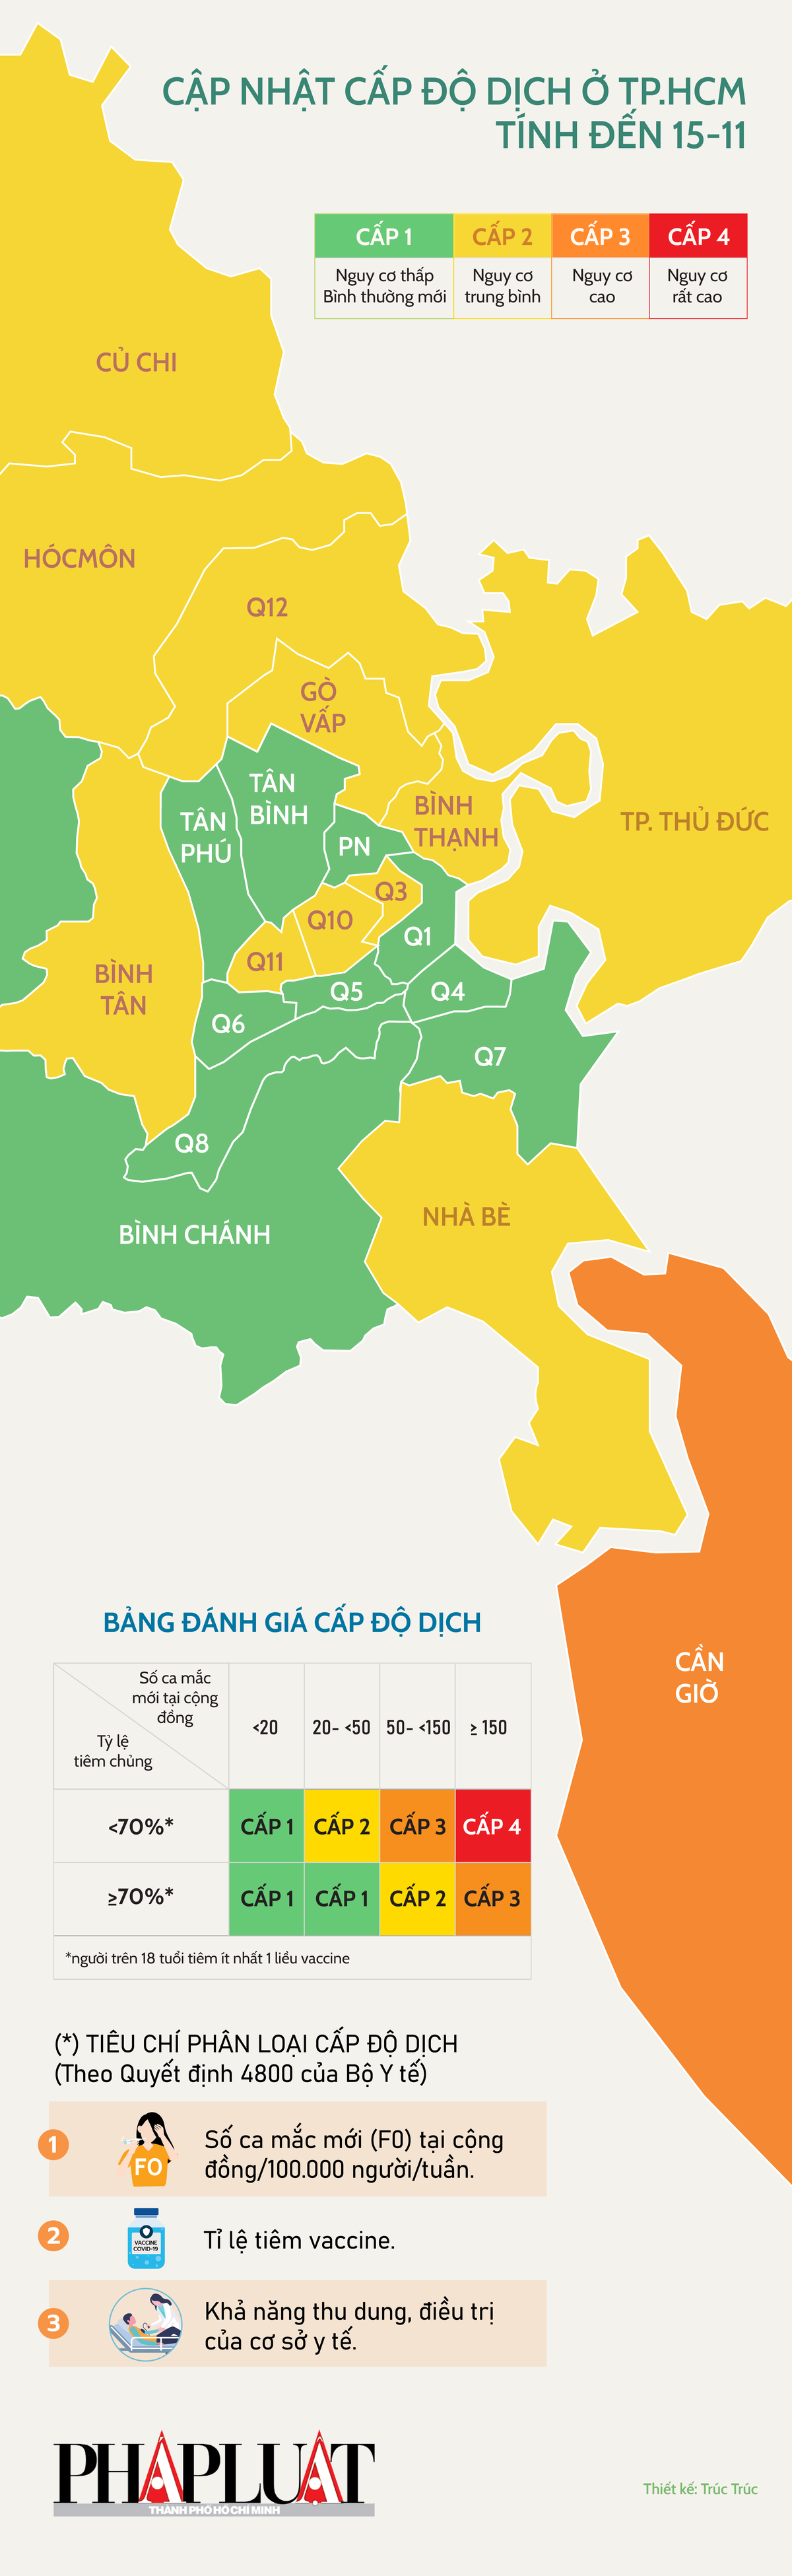 Bản đồ cấp độ dịch COVID-19 tại thành phố Hồ Chí Minh được cập nhật liên tục và rõ ràng nhất để giúp mọi người có thể dễ dàng theo dõi tình hình dịch bệnh trong thành phố. Dữ liệu trên bản đồ được cập nhật liên tục, để giúp mọi người nắm bắt được tình hình dịch bệnh để có các biện pháp xử lý phù hợp.